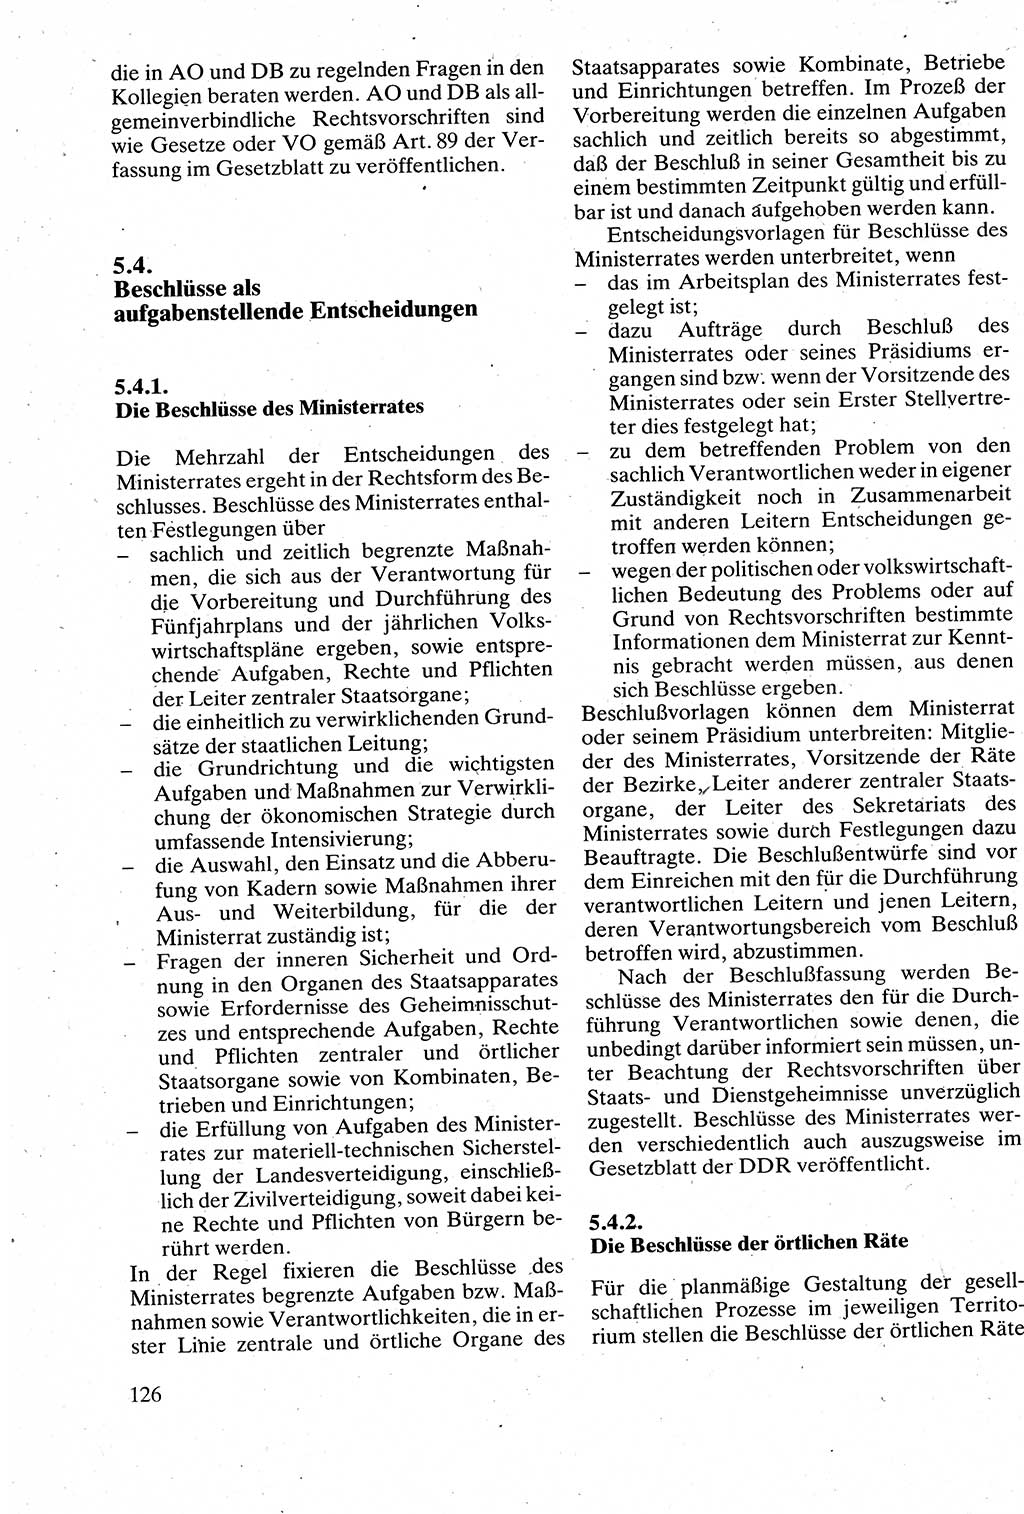 Verwaltungsrecht [Deutsche Demokratische Republik (DDR)], Lehrbuch 1988, Seite 126 (Verw.-R. DDR Lb. 1988, S. 126)